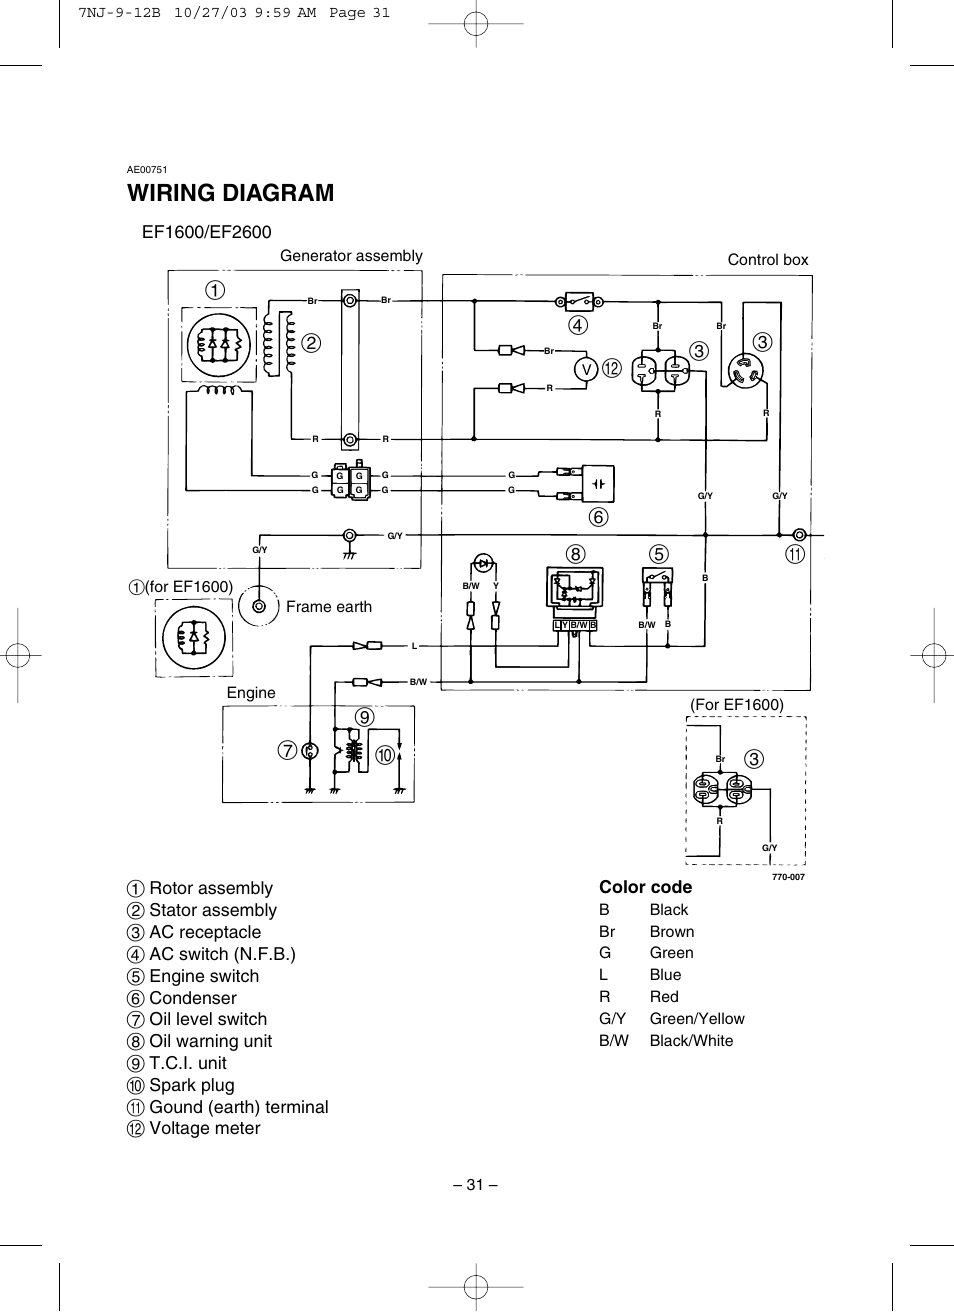 Wiring diagram | Yamaha EF1600 User Manual | Page 36 / 41 | Original mode